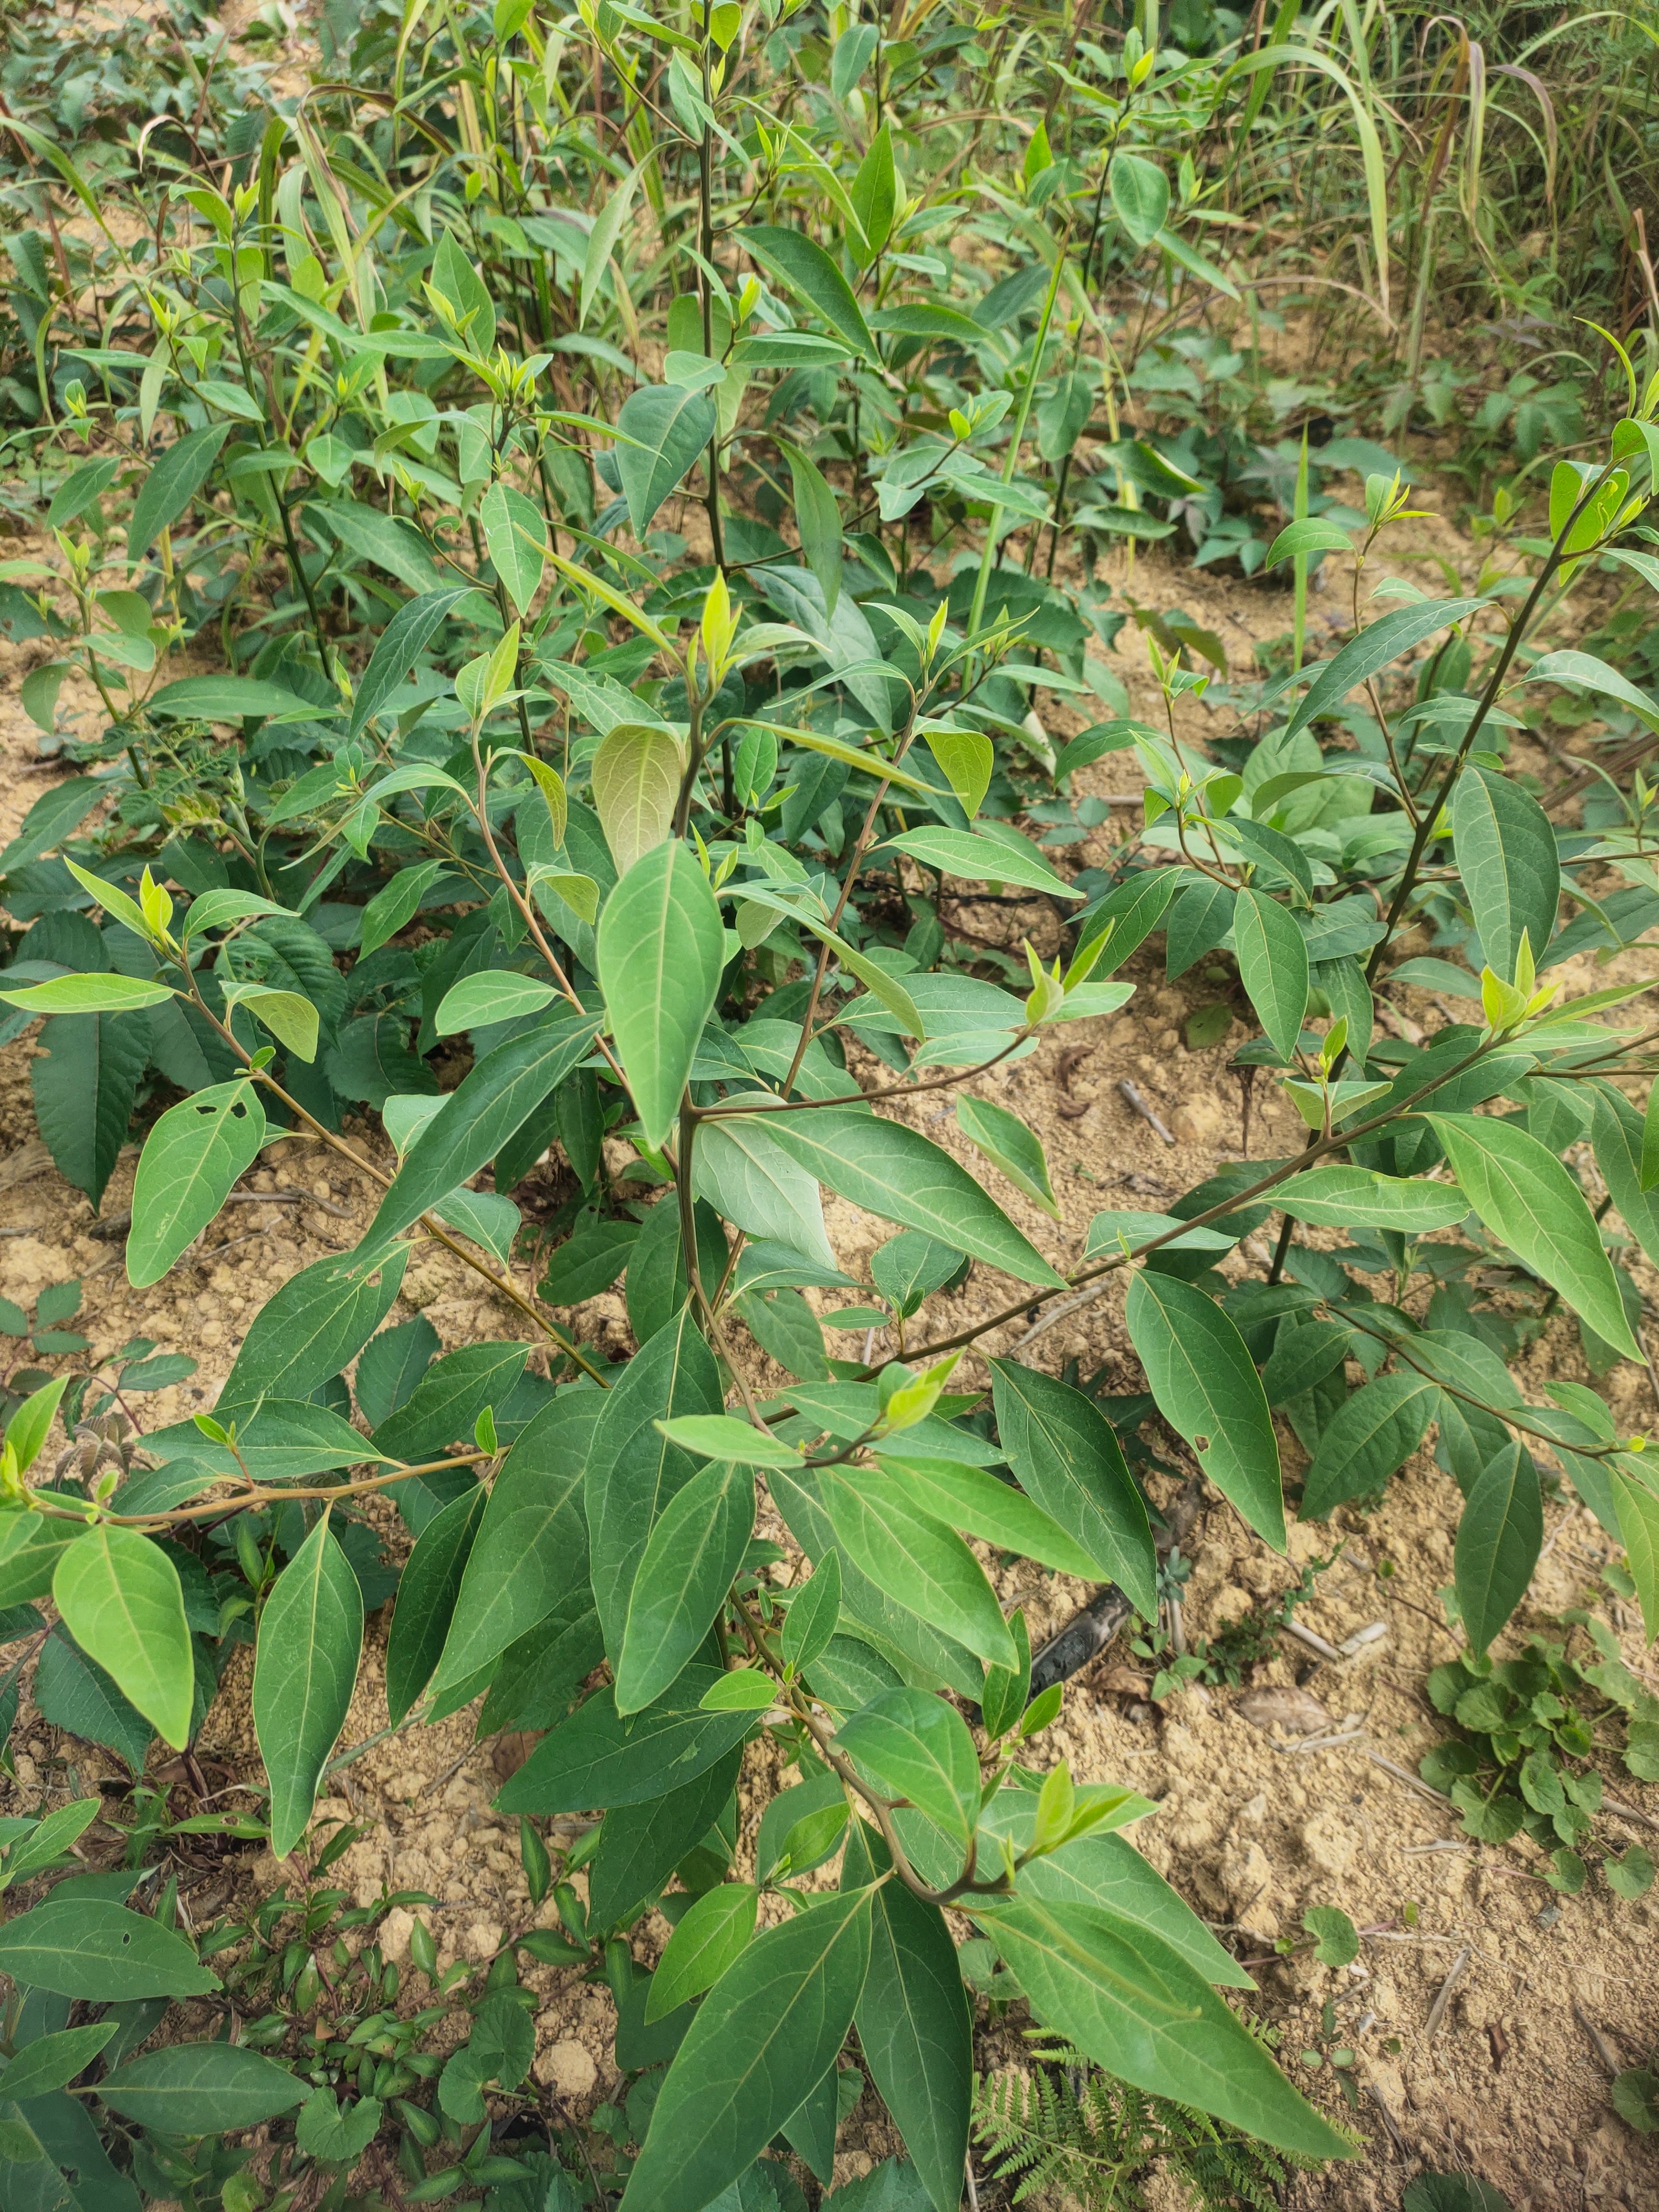 木姜子树苗大量供应裸根实生苗种植